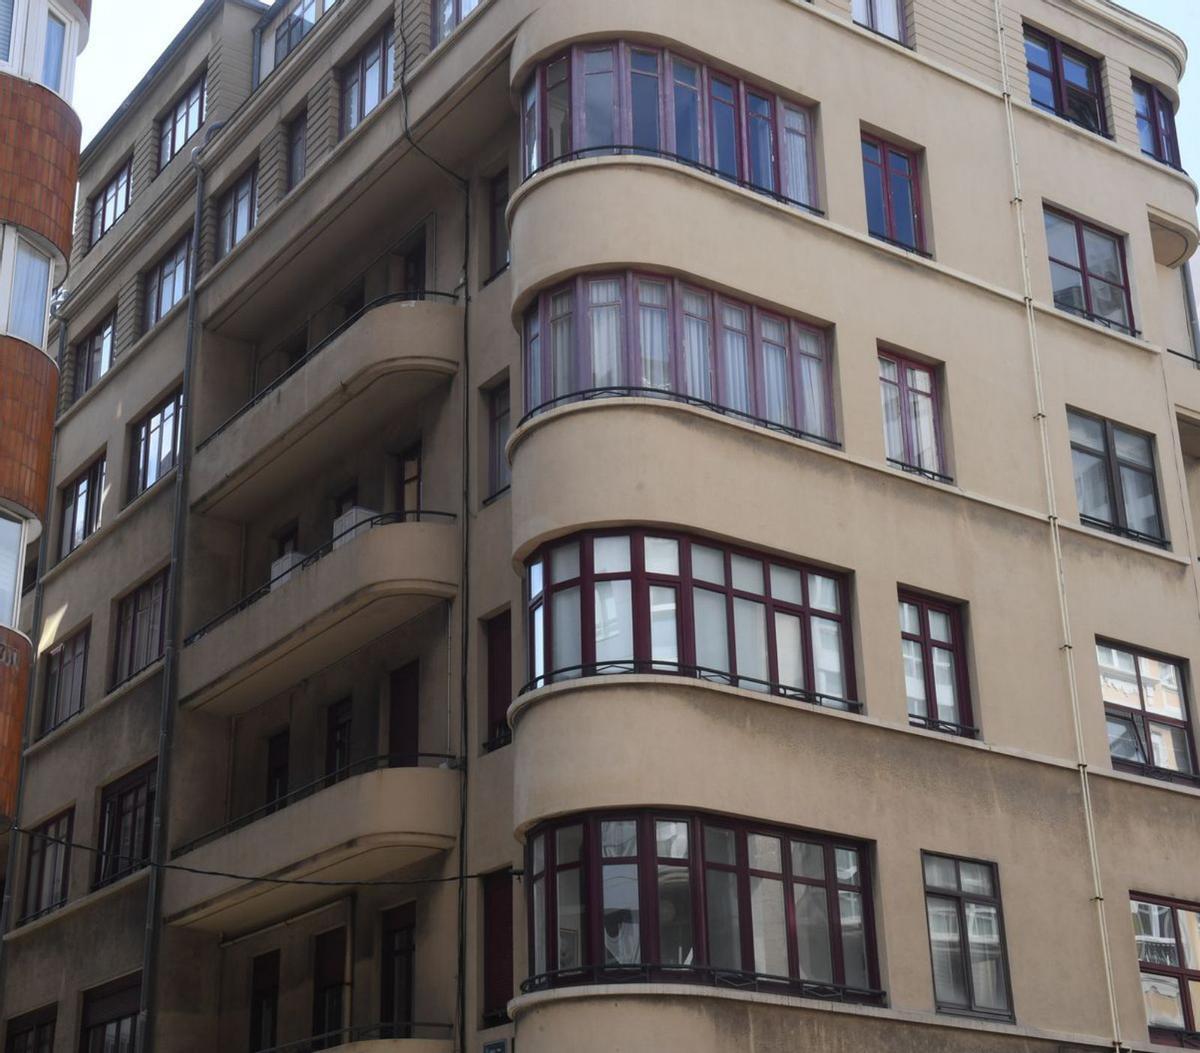 Detalle de los balcones de la casa Formoso, de estilo racionalista.   | // CARLOS PARDELLAS